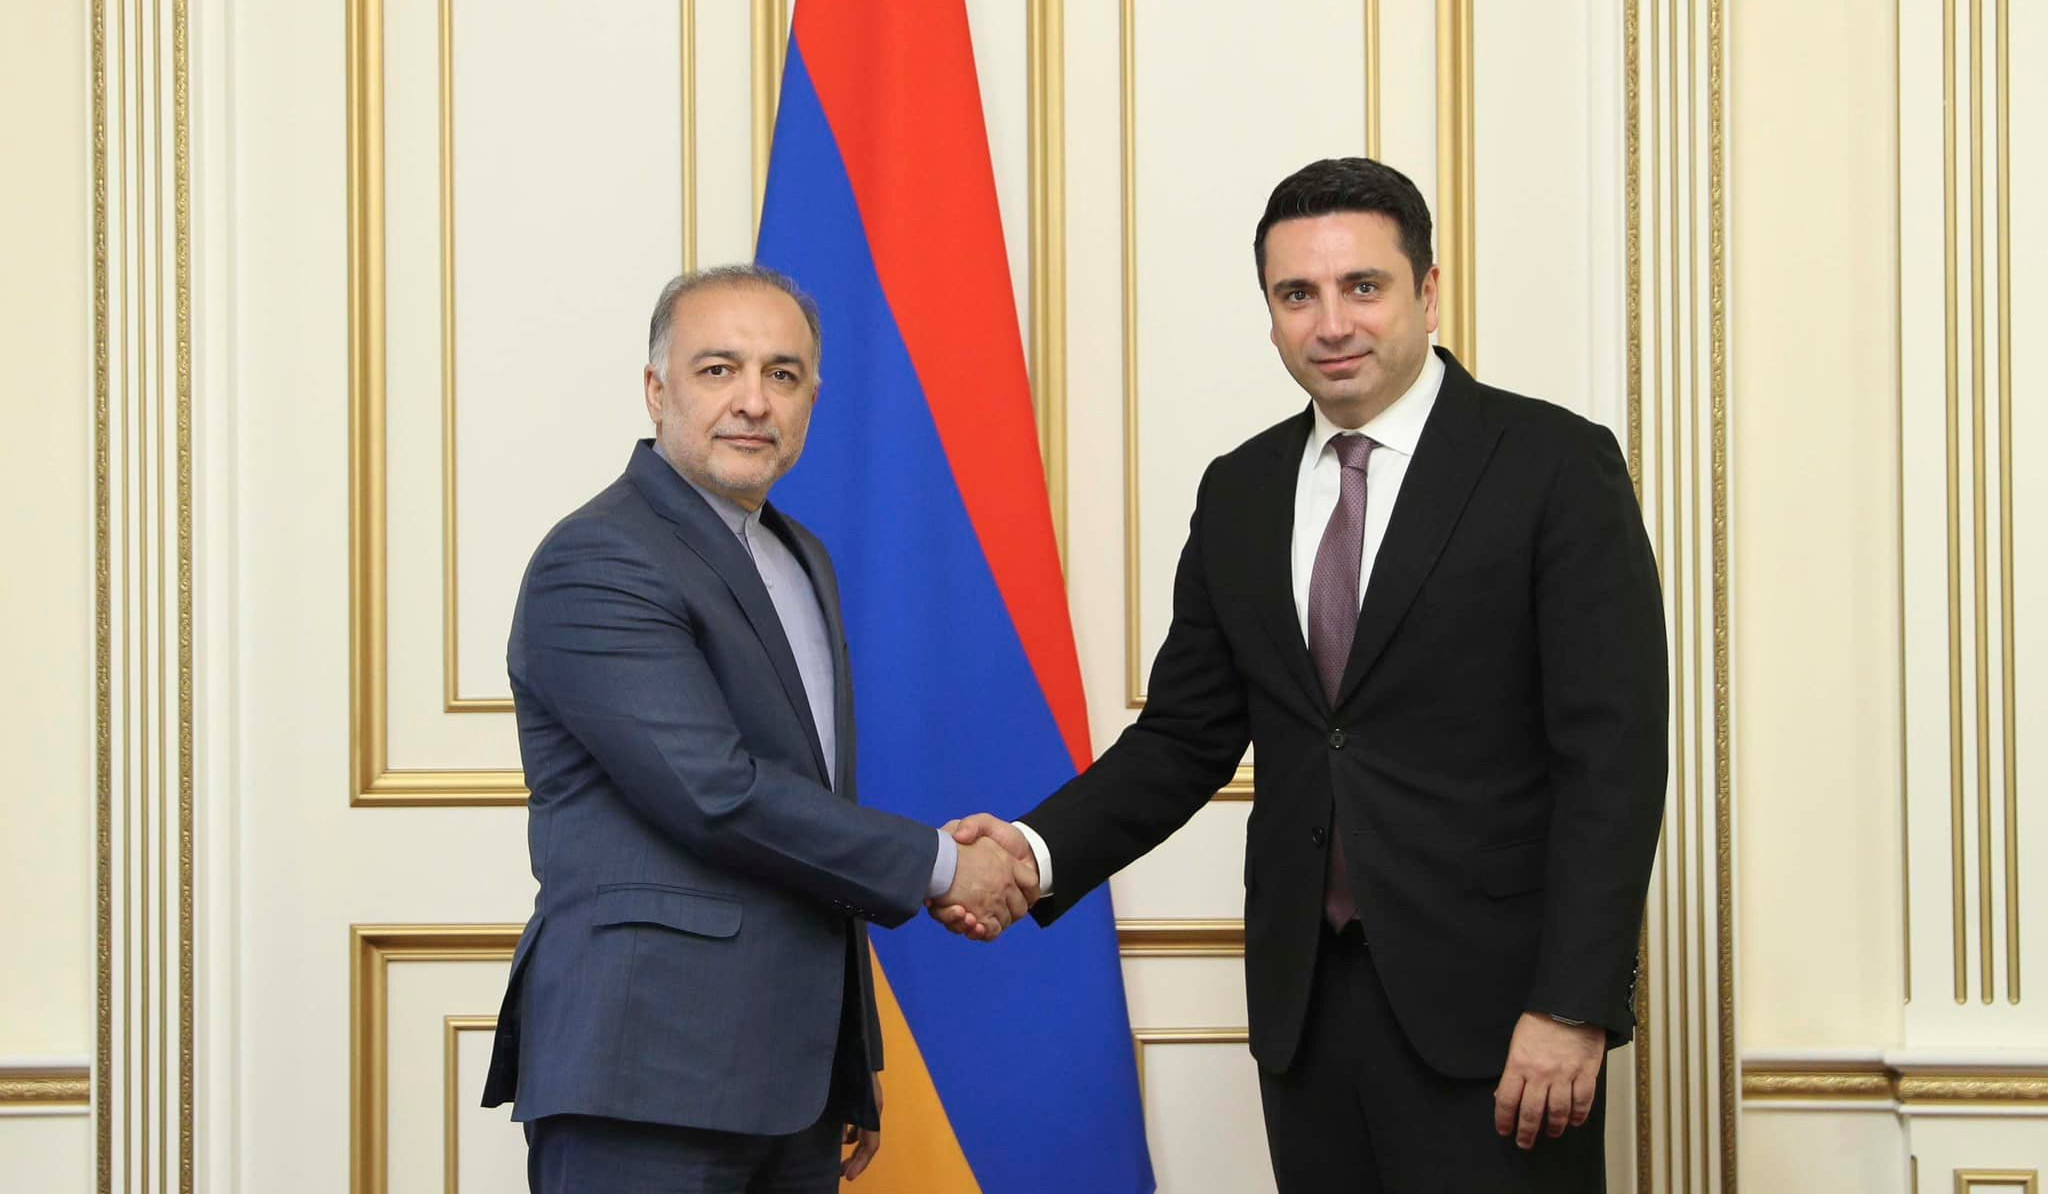 Հայաստանի համար Իրանը եղել և մնում է առանձնահատուկ գործընկեր, որը նպաստում է տարածաշրջանում խաղաղության հաստատմանը. Ալեն Սիմոնյան